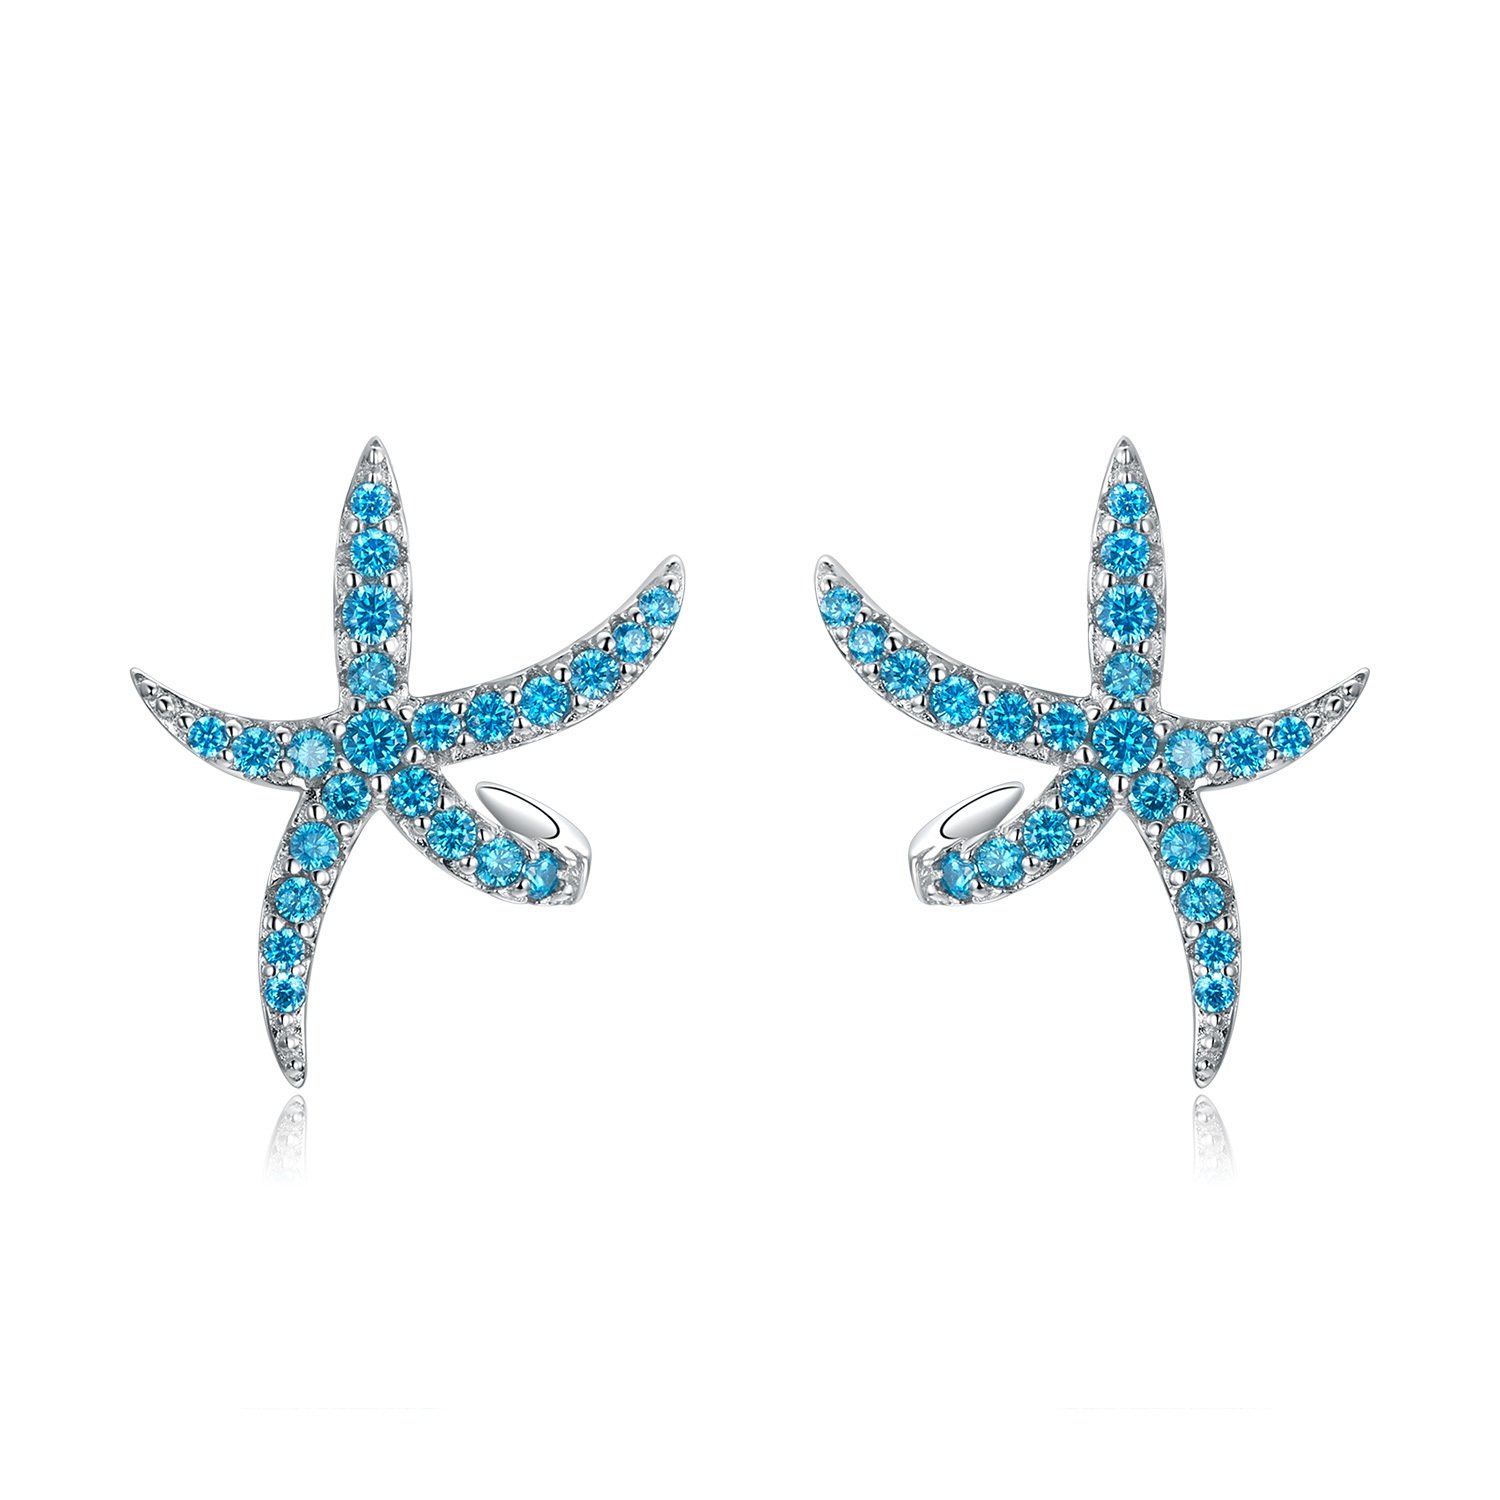 Cercei din argint Turquoise Sea Star la pret fara cncurenta